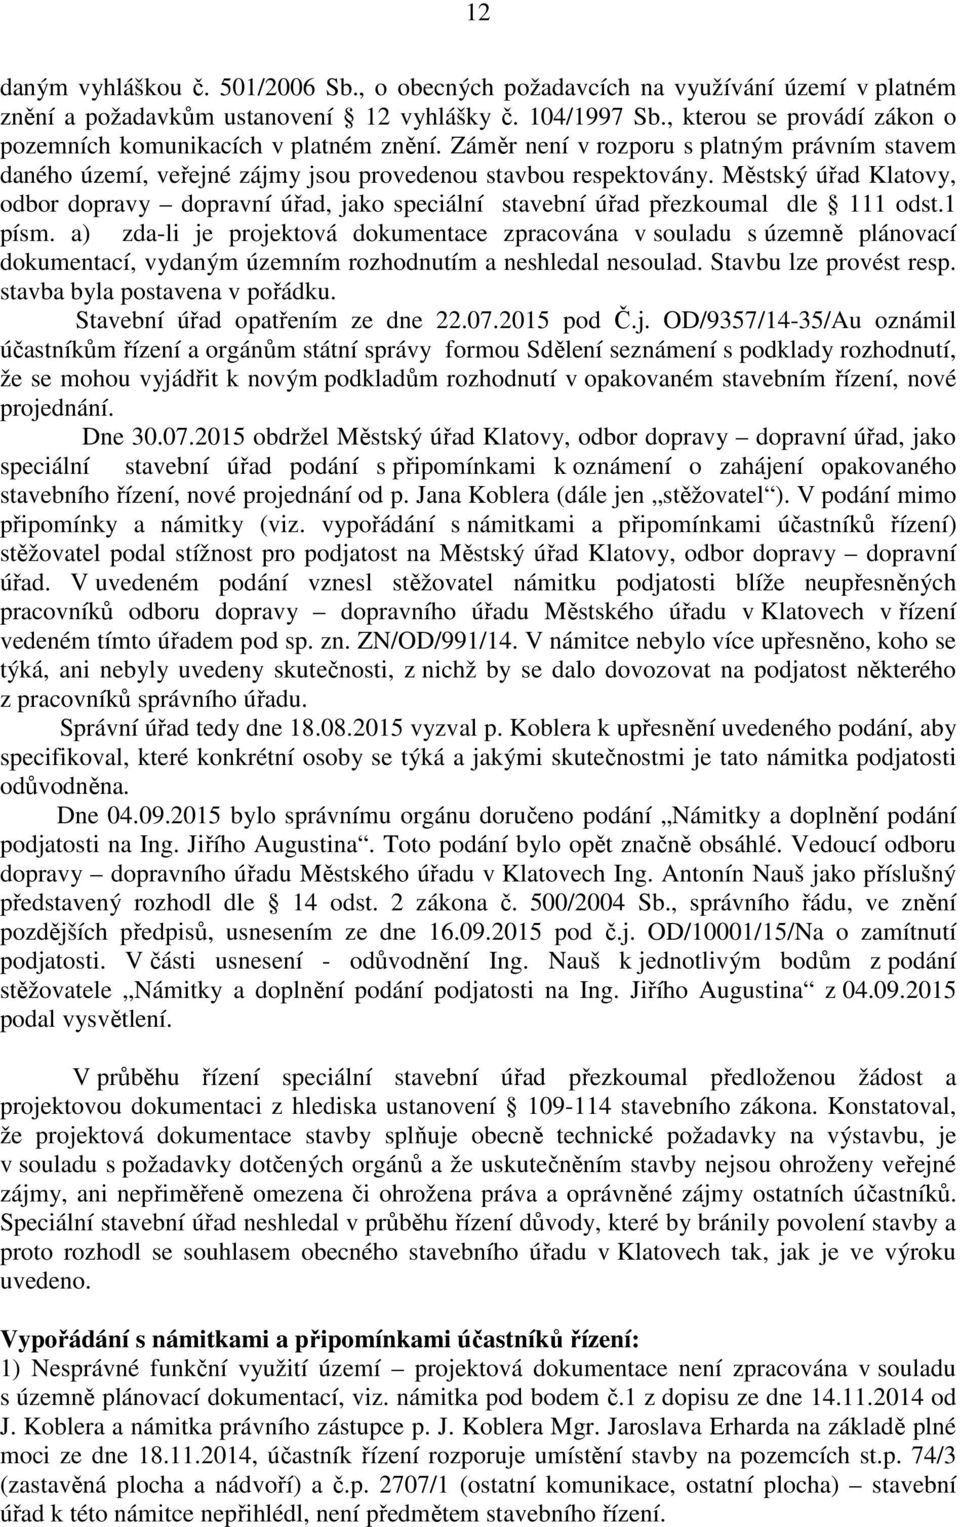 Městský úřad Klatovy, odbor dopravy dopravní úřad, jako speciální stavební úřad přezkoumal dle 111 odst.1 písm.